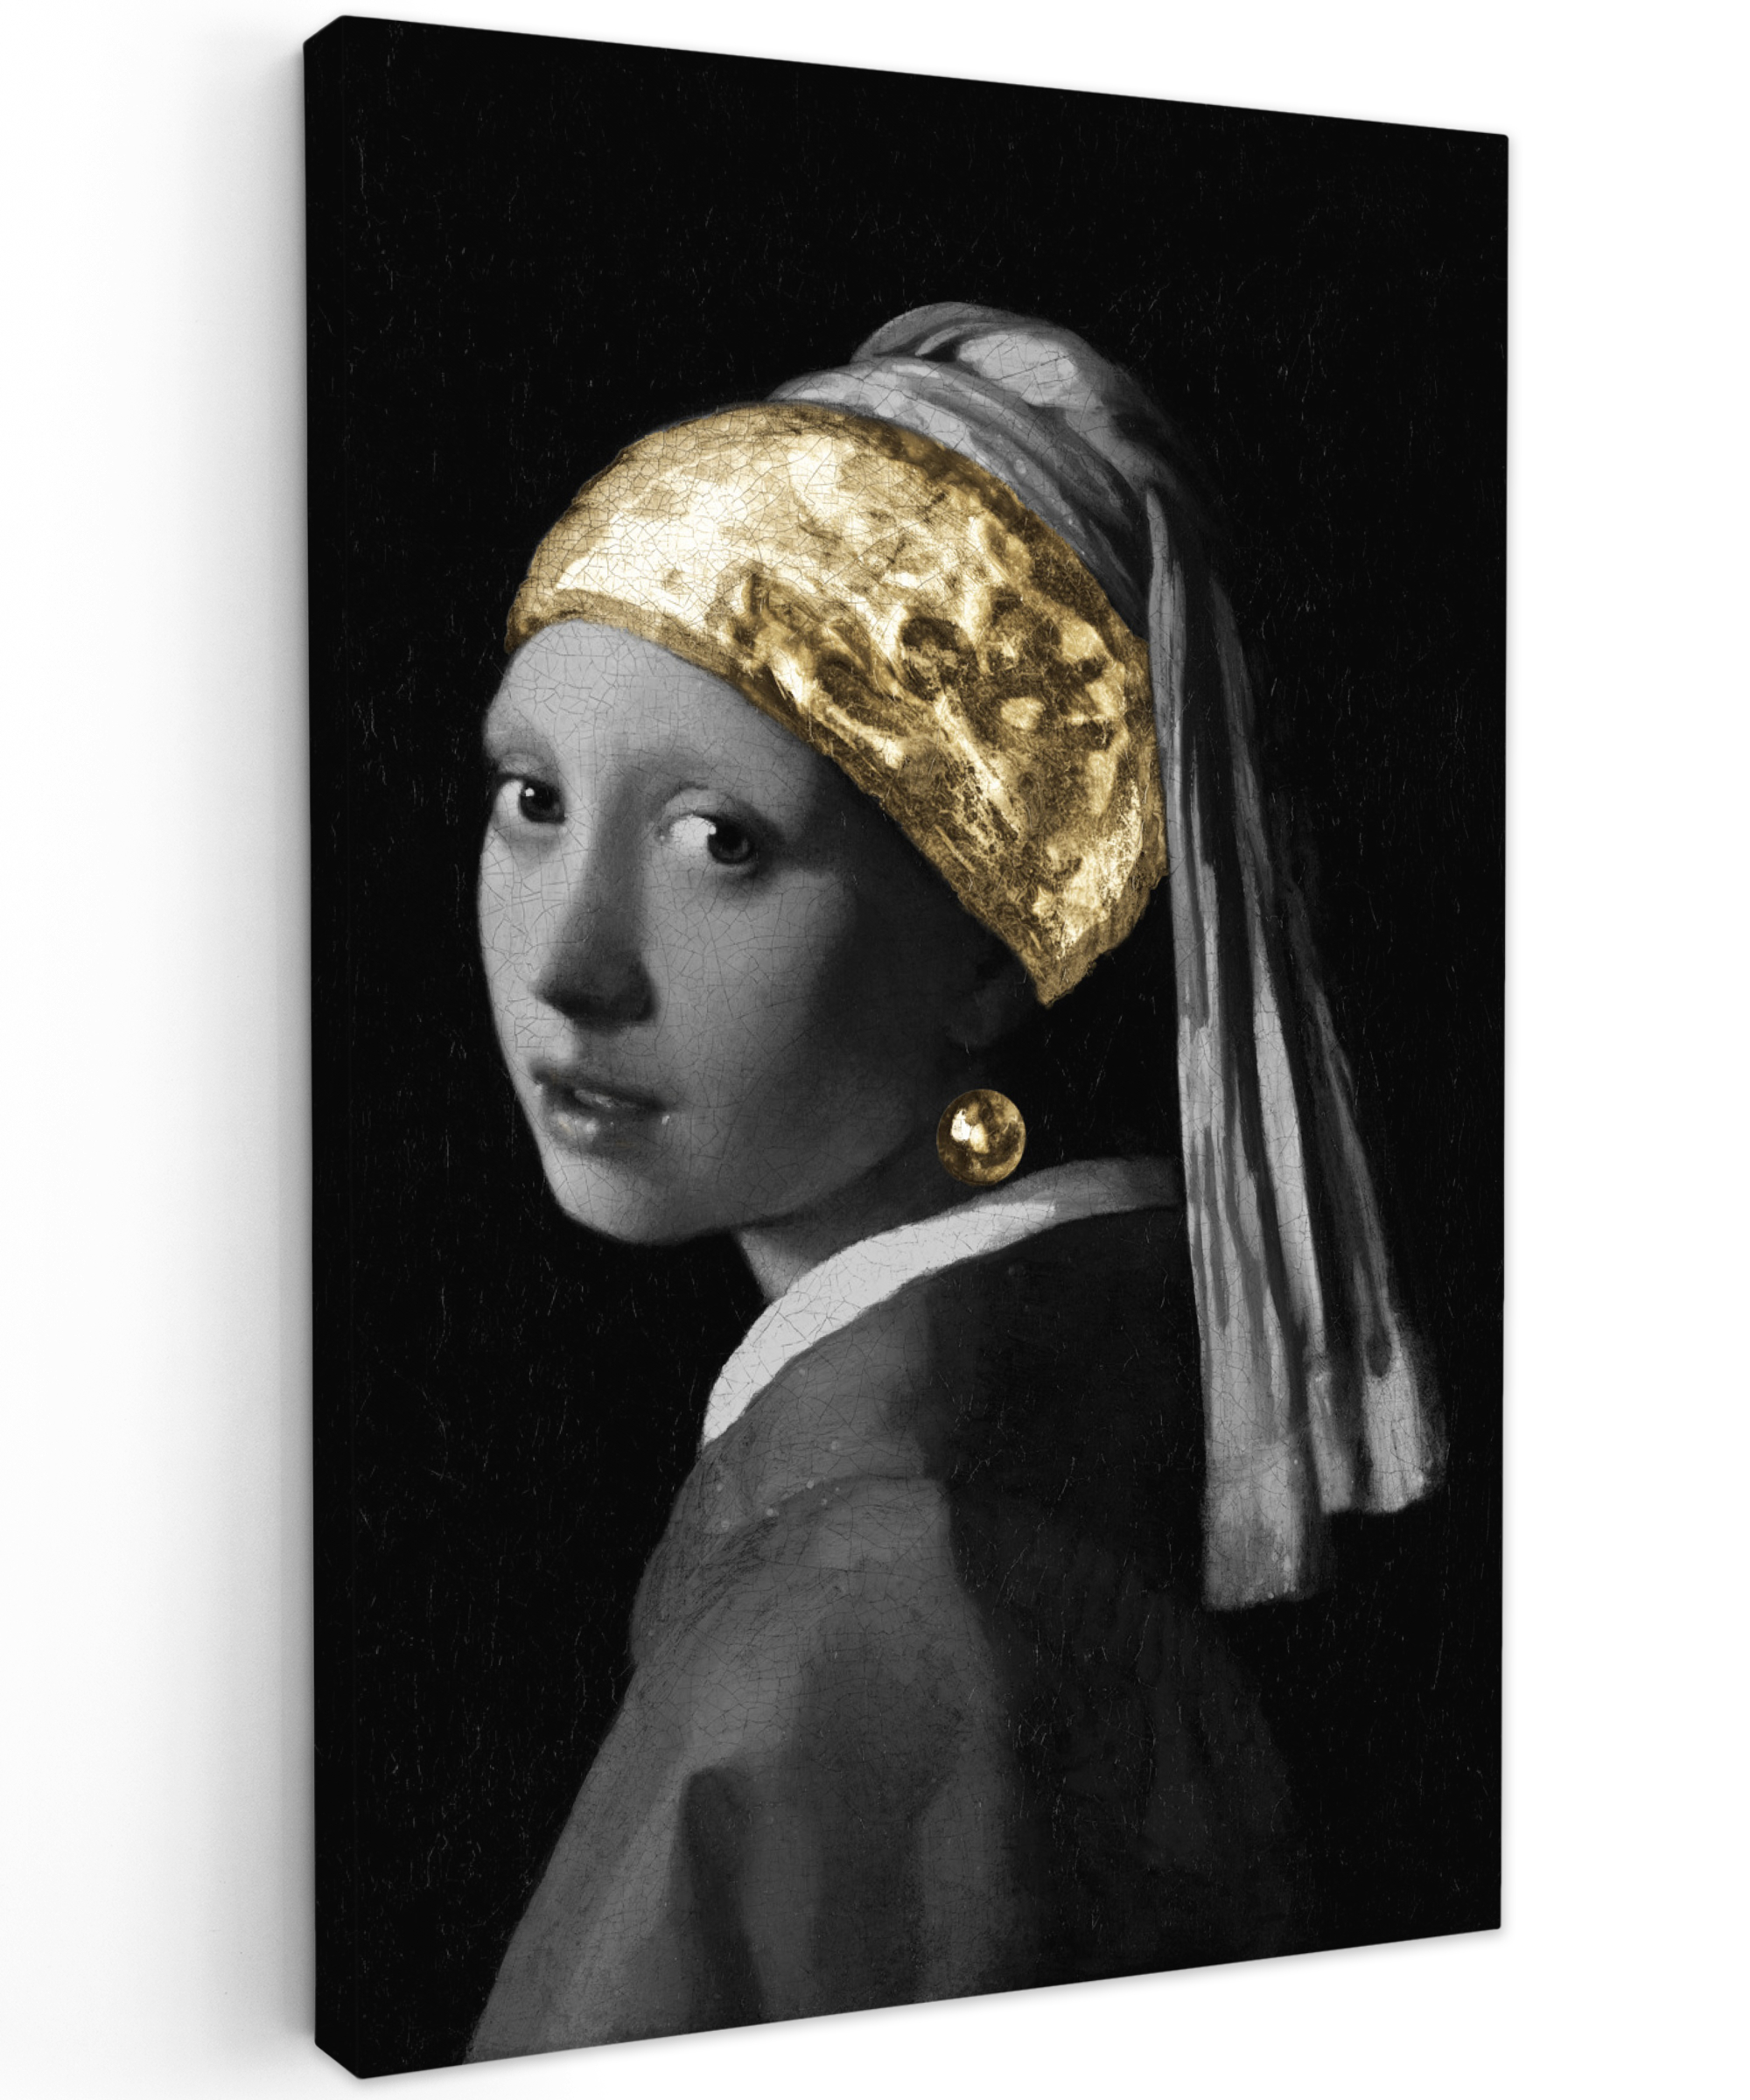 Tableau sur toile - Jeune fille à la perle - Johannes Vermeer - Or